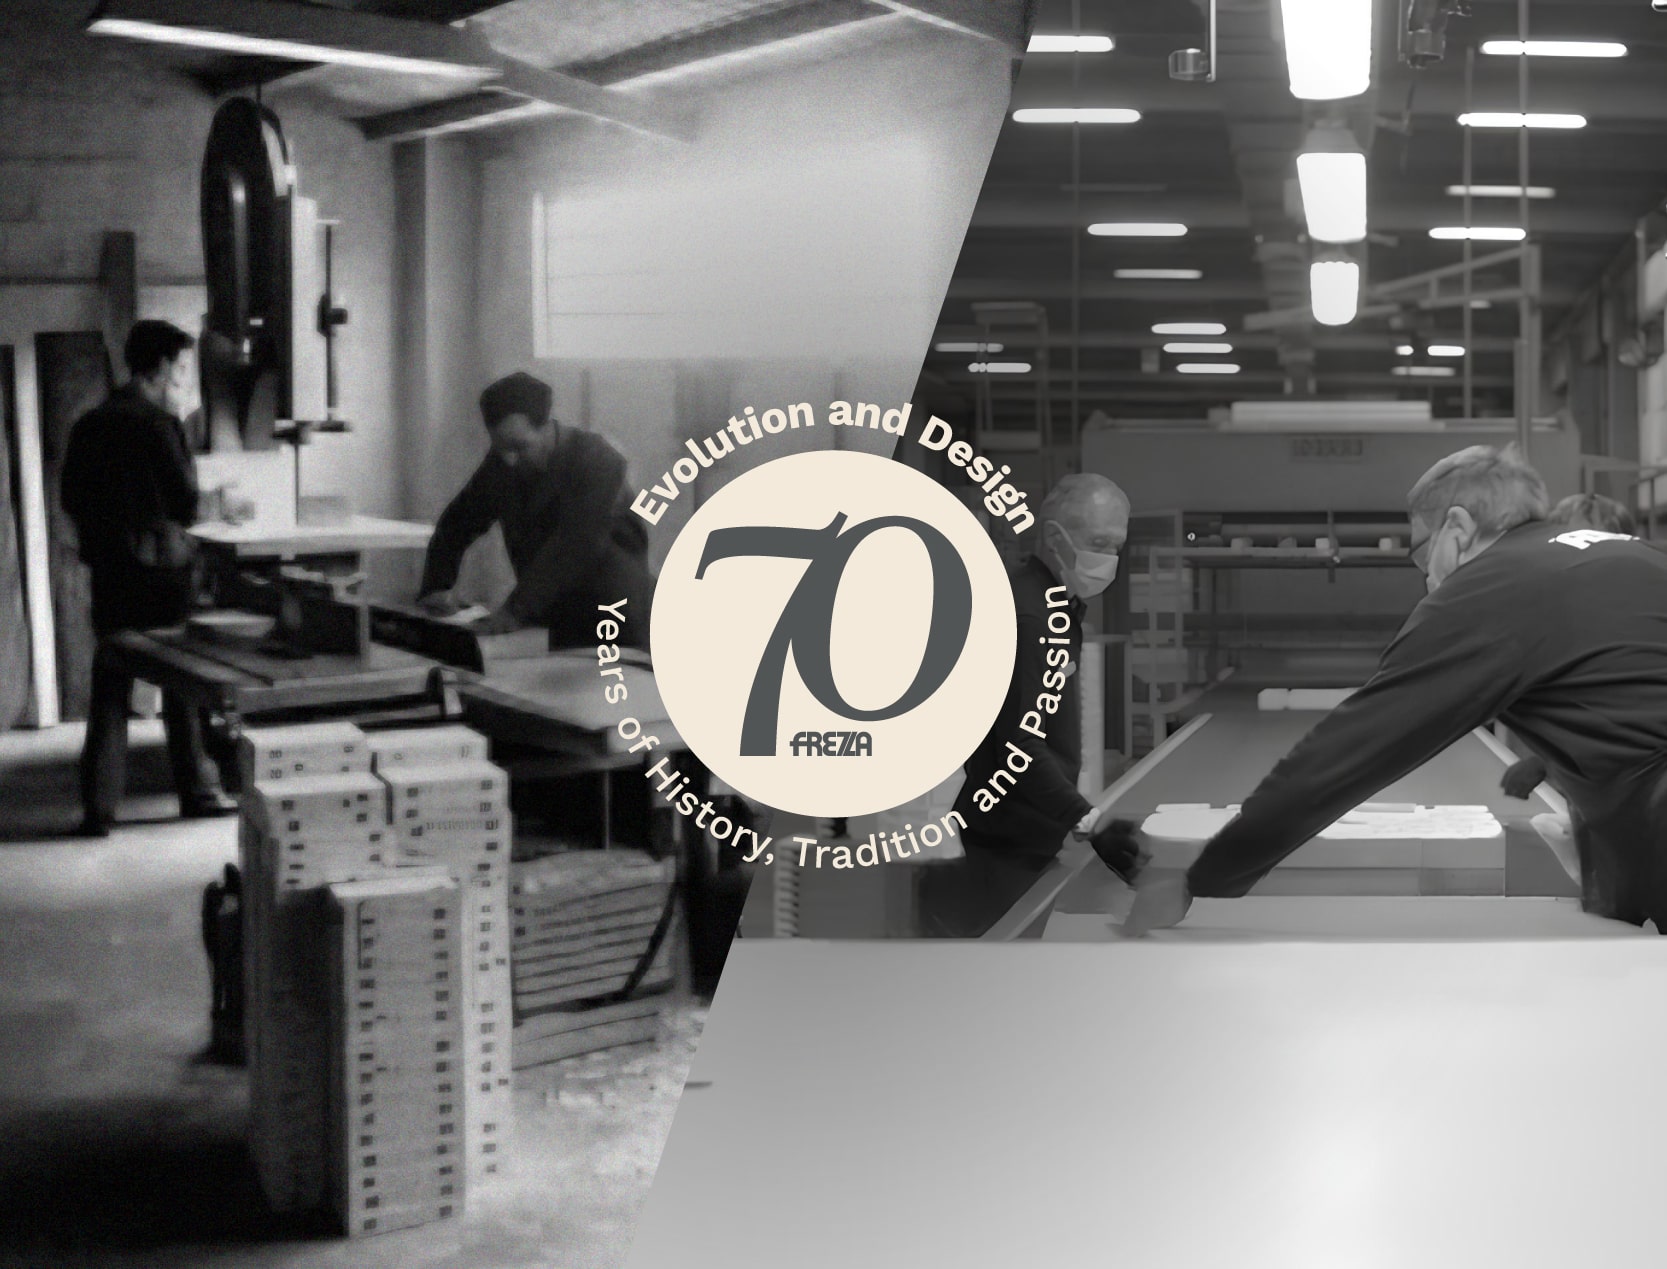 Celebra i 70 anni di Frezza, dalla nascita come mobilificio a brand di design globale. Scopri la storia, l'evoluzione e il futuro sostenibile.